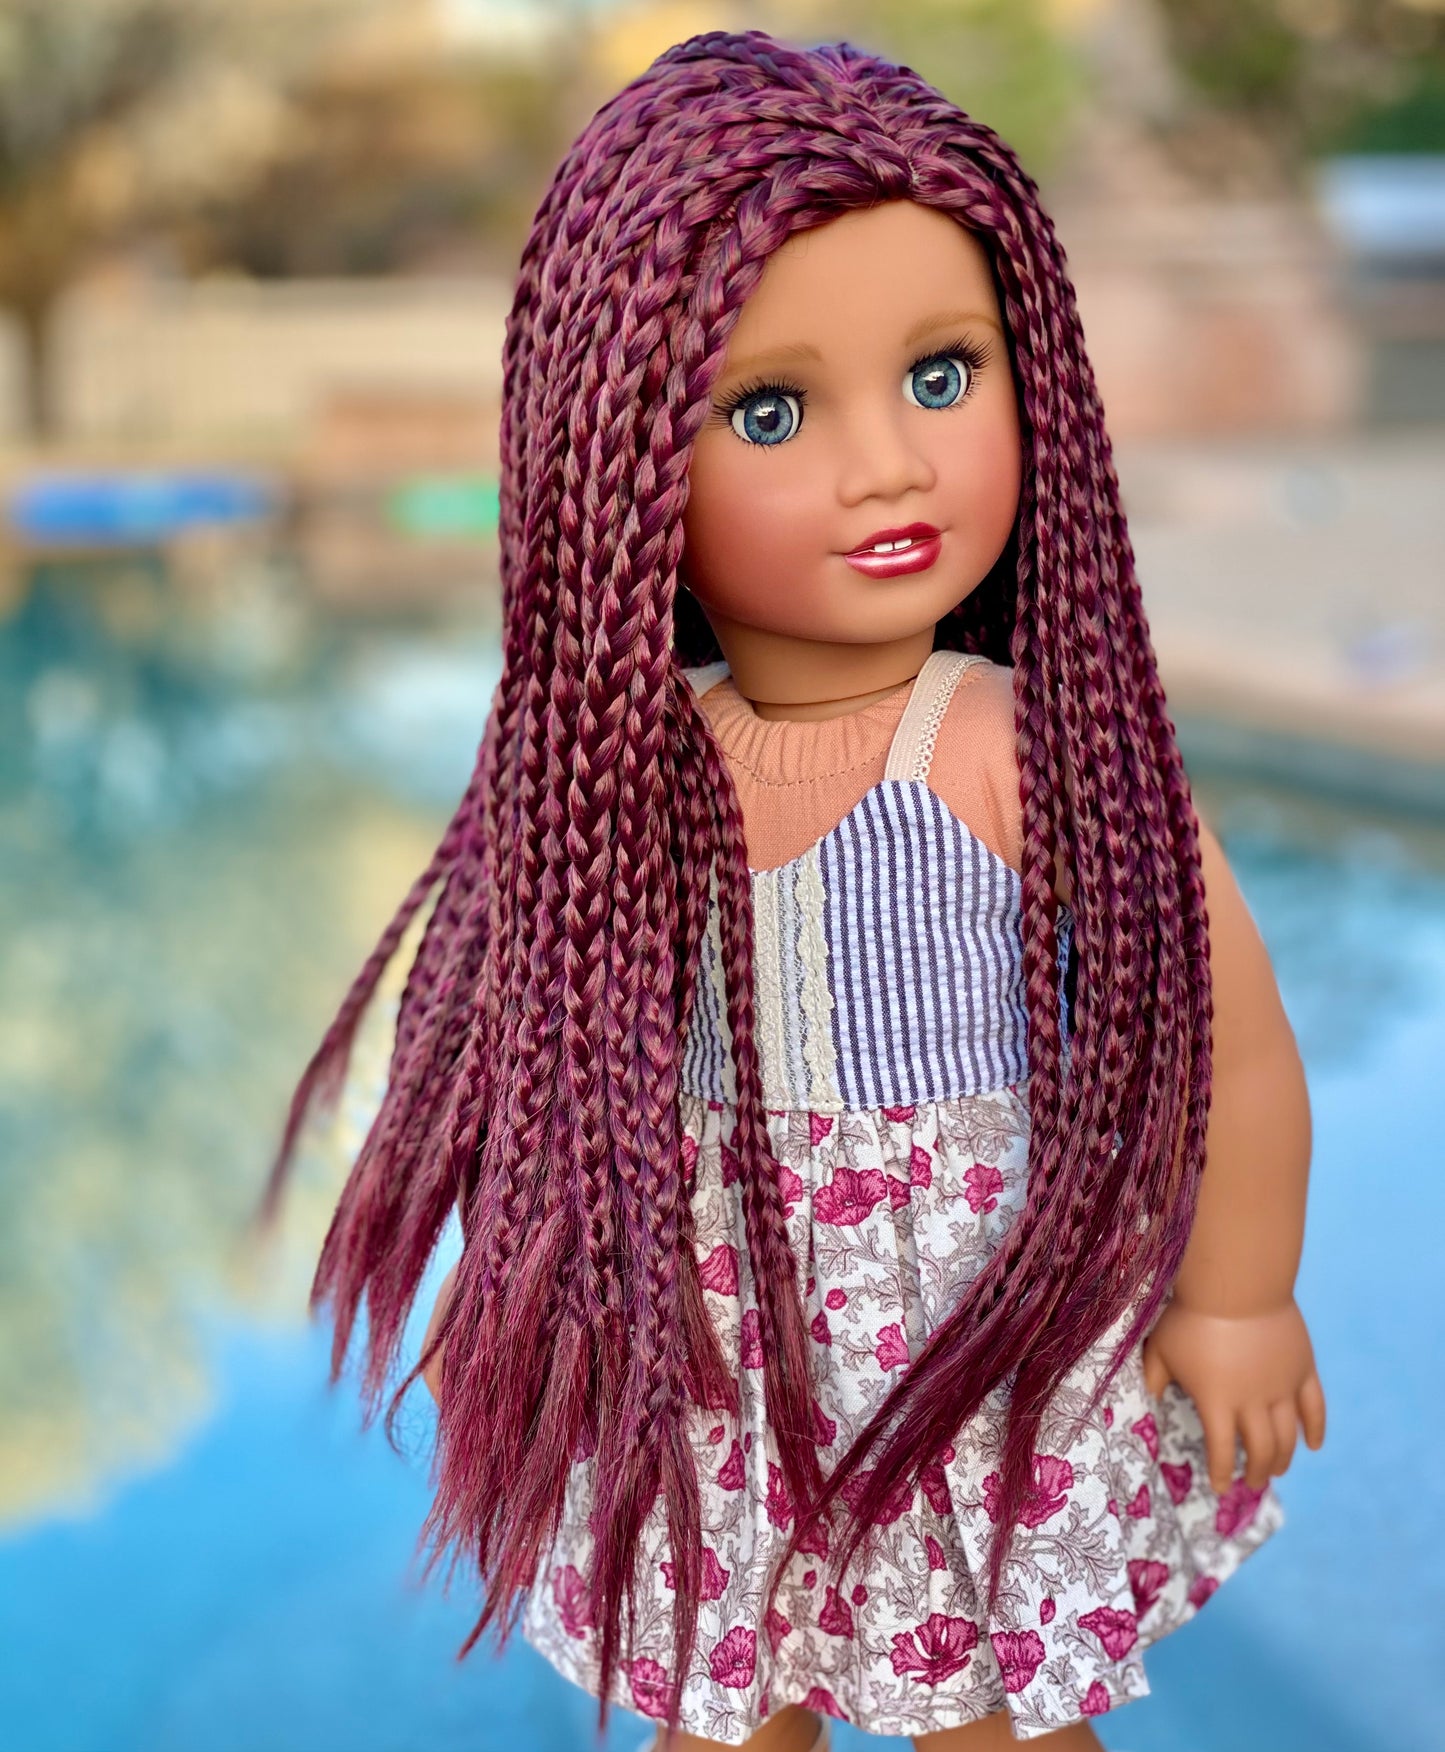 American Girl Custom Doll “Karina”